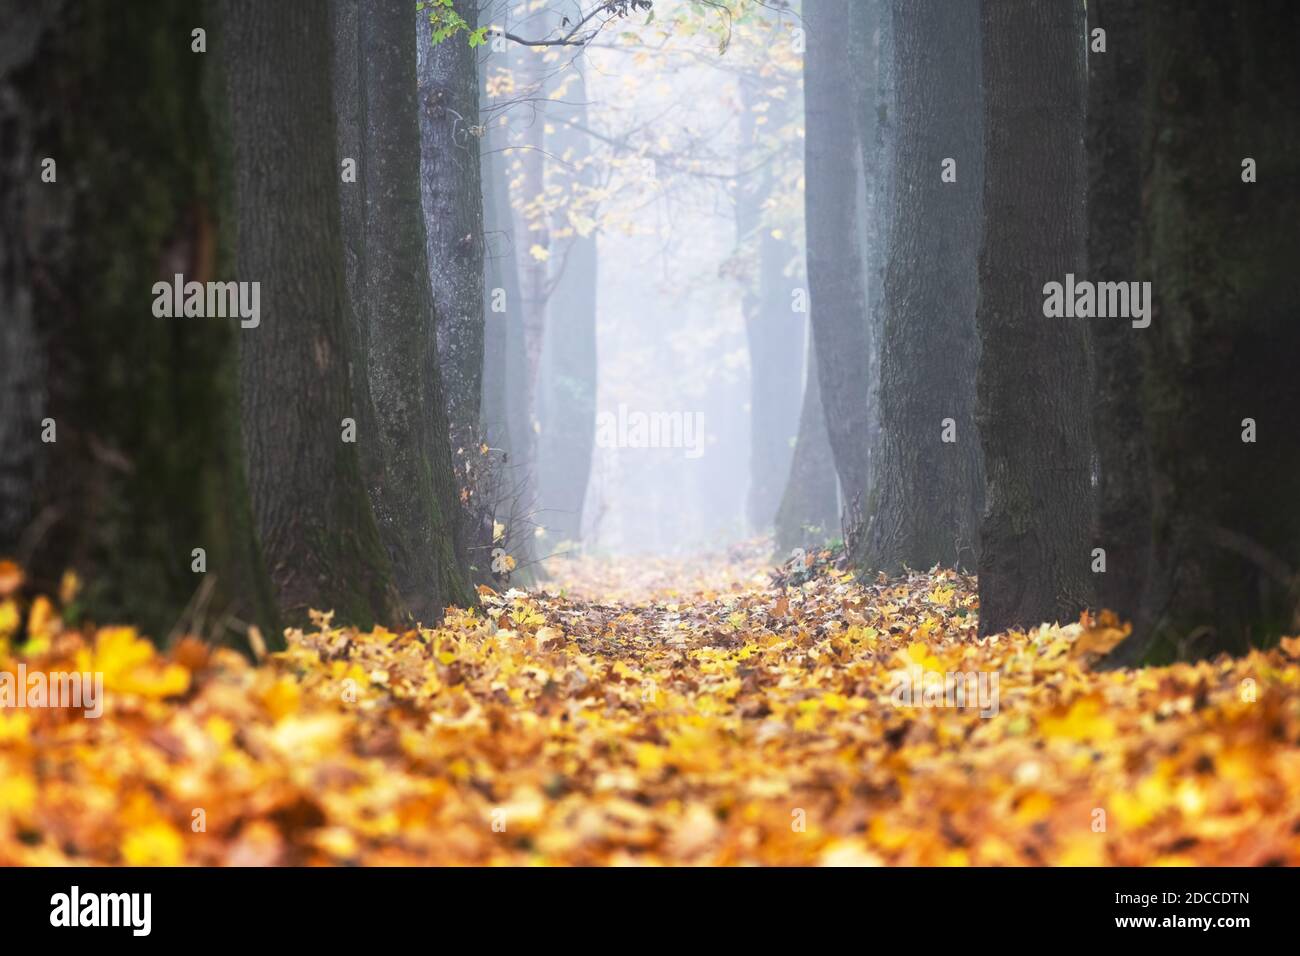 Majestueuse ruelle d'érable et de chêne avec des folliages jaune et orange à l'automne. Scène pittoresque d'automne Photographie de paysage Banque D'Images